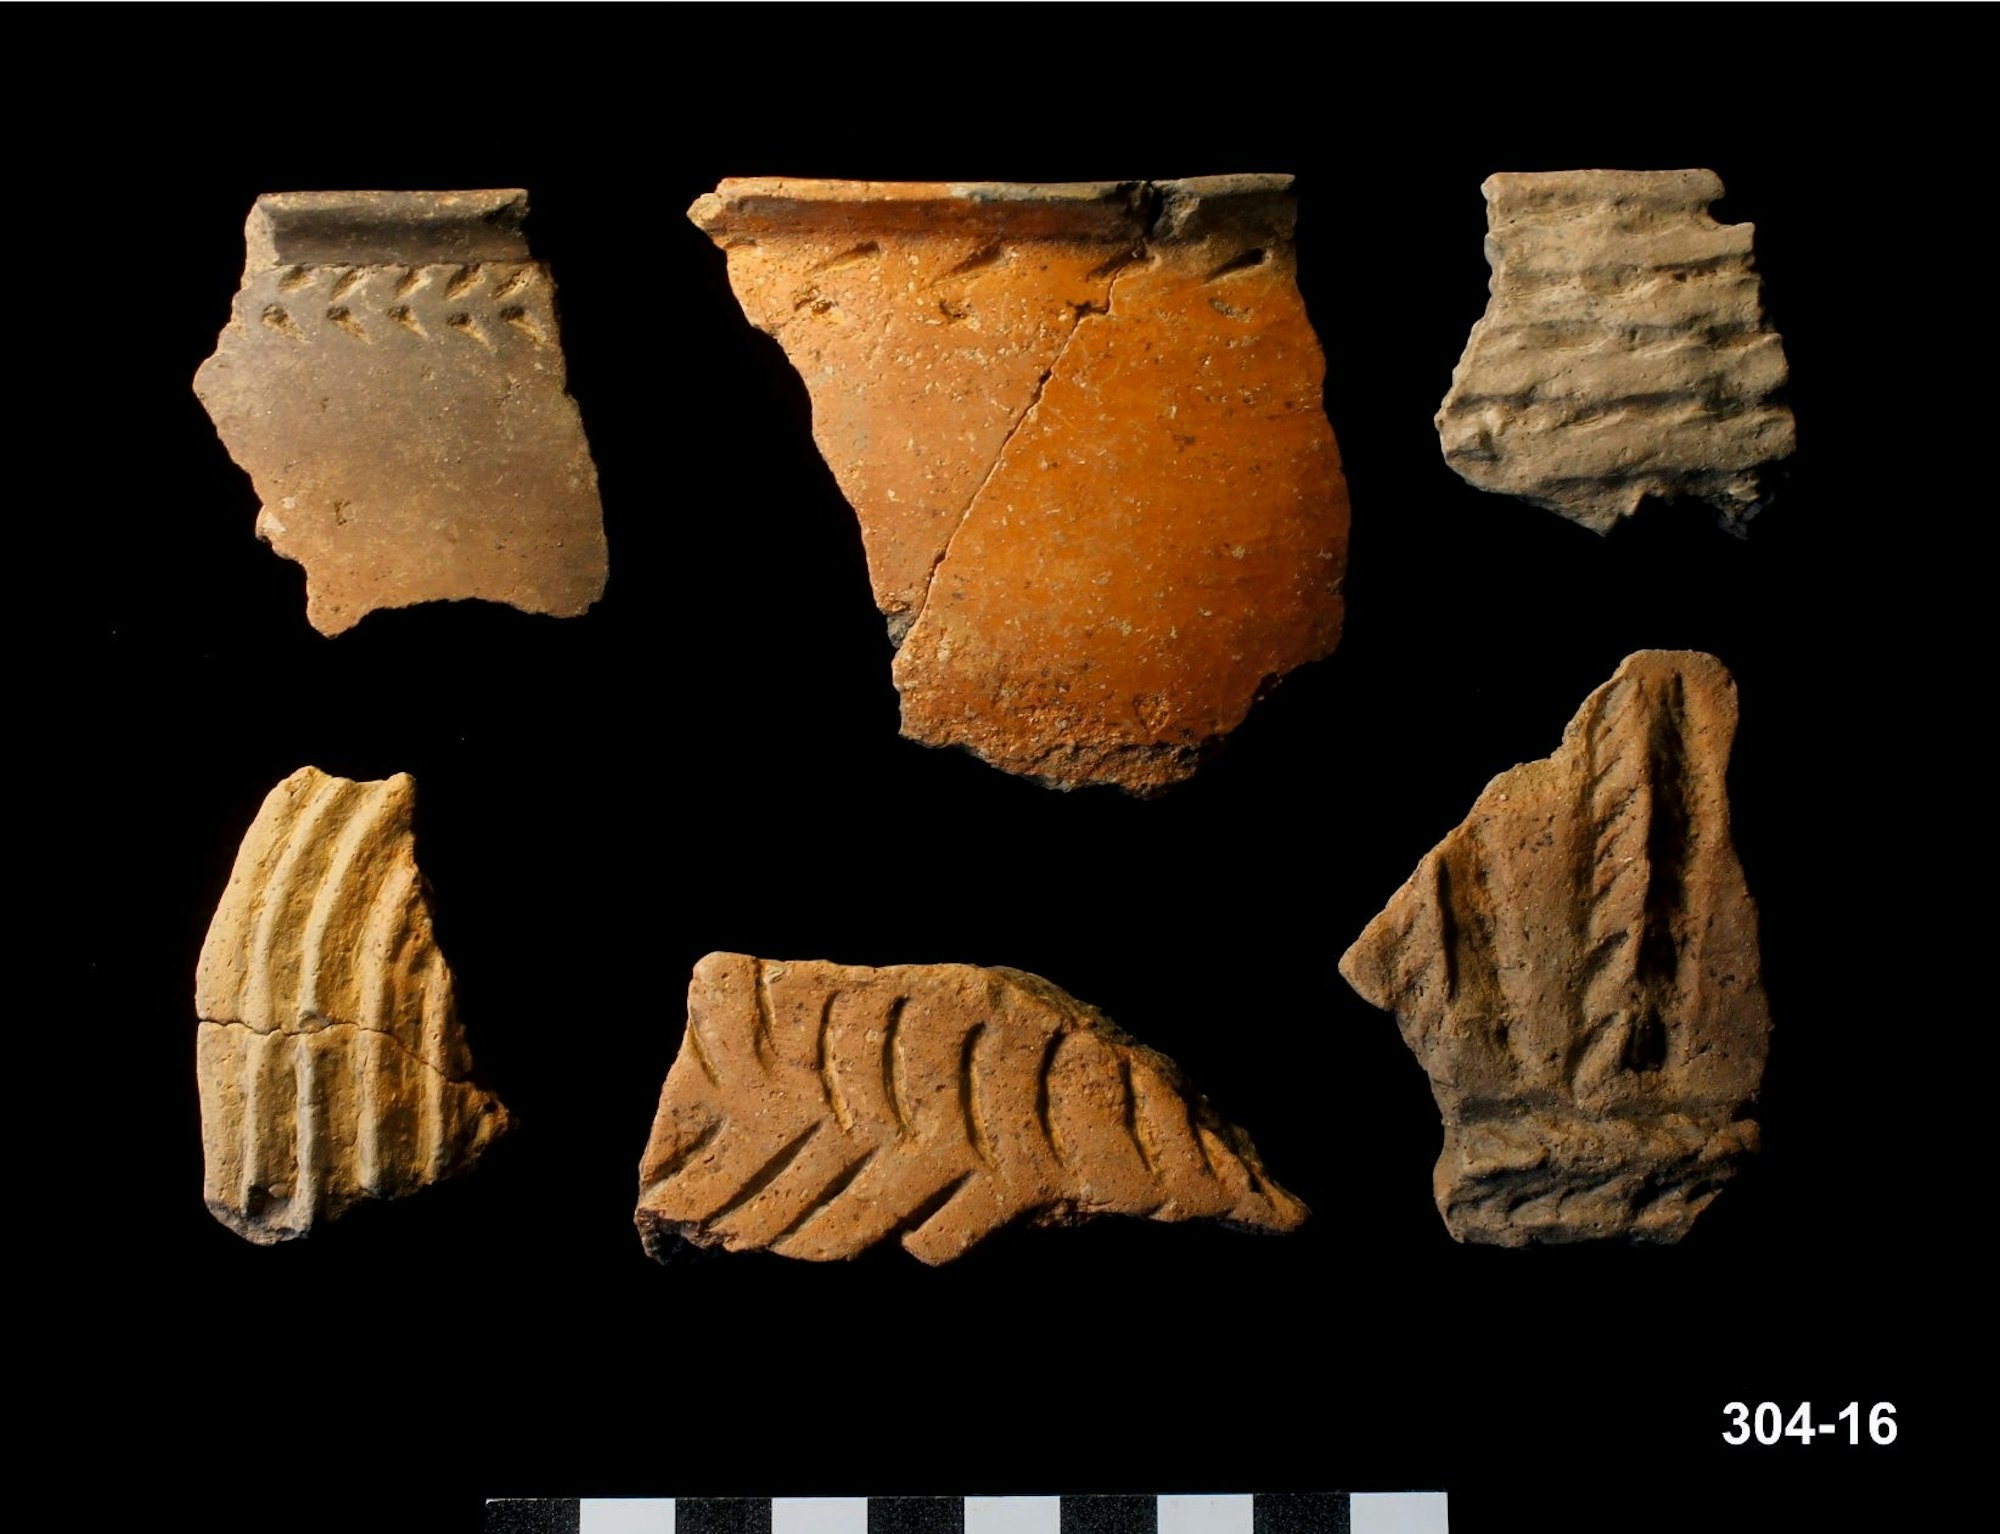 Spätbronzezeitliche Befunde: Die sehr fein gearbeitete Keramik deutet auf das neunte Jahrhundert, vielleicht sogar auf den Übergang zum achten Jahrhundert vor Christus hin.